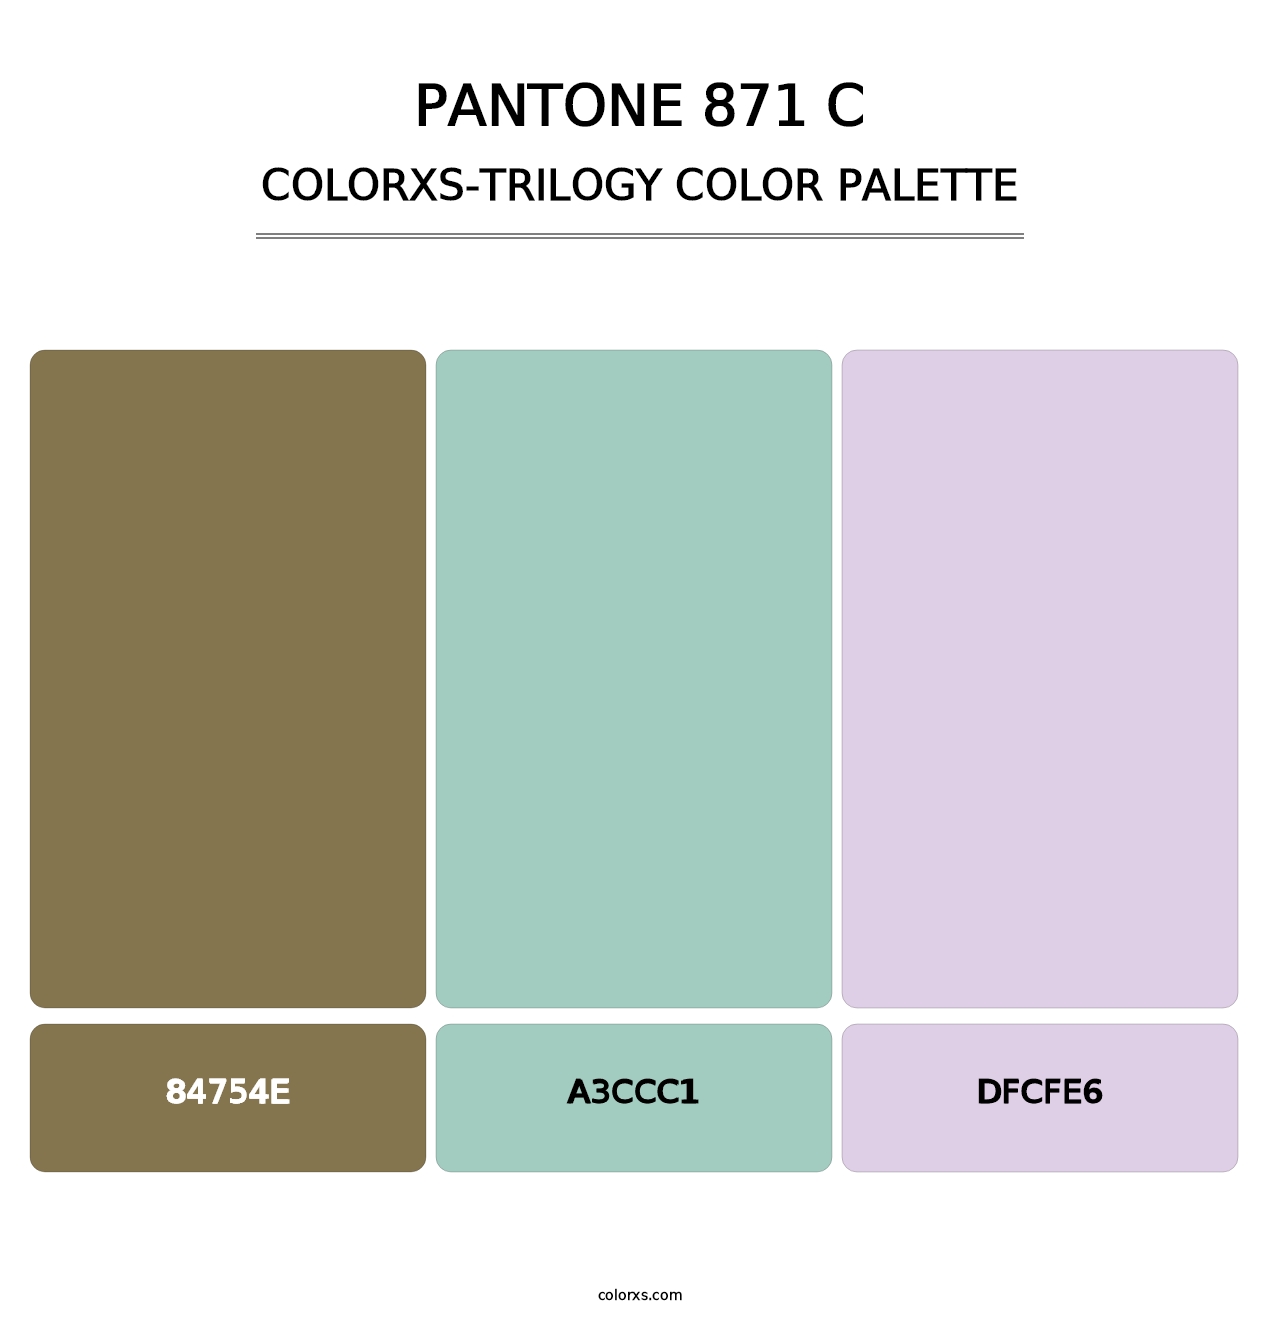 PANTONE 871 C - Colorxs Trilogy Palette